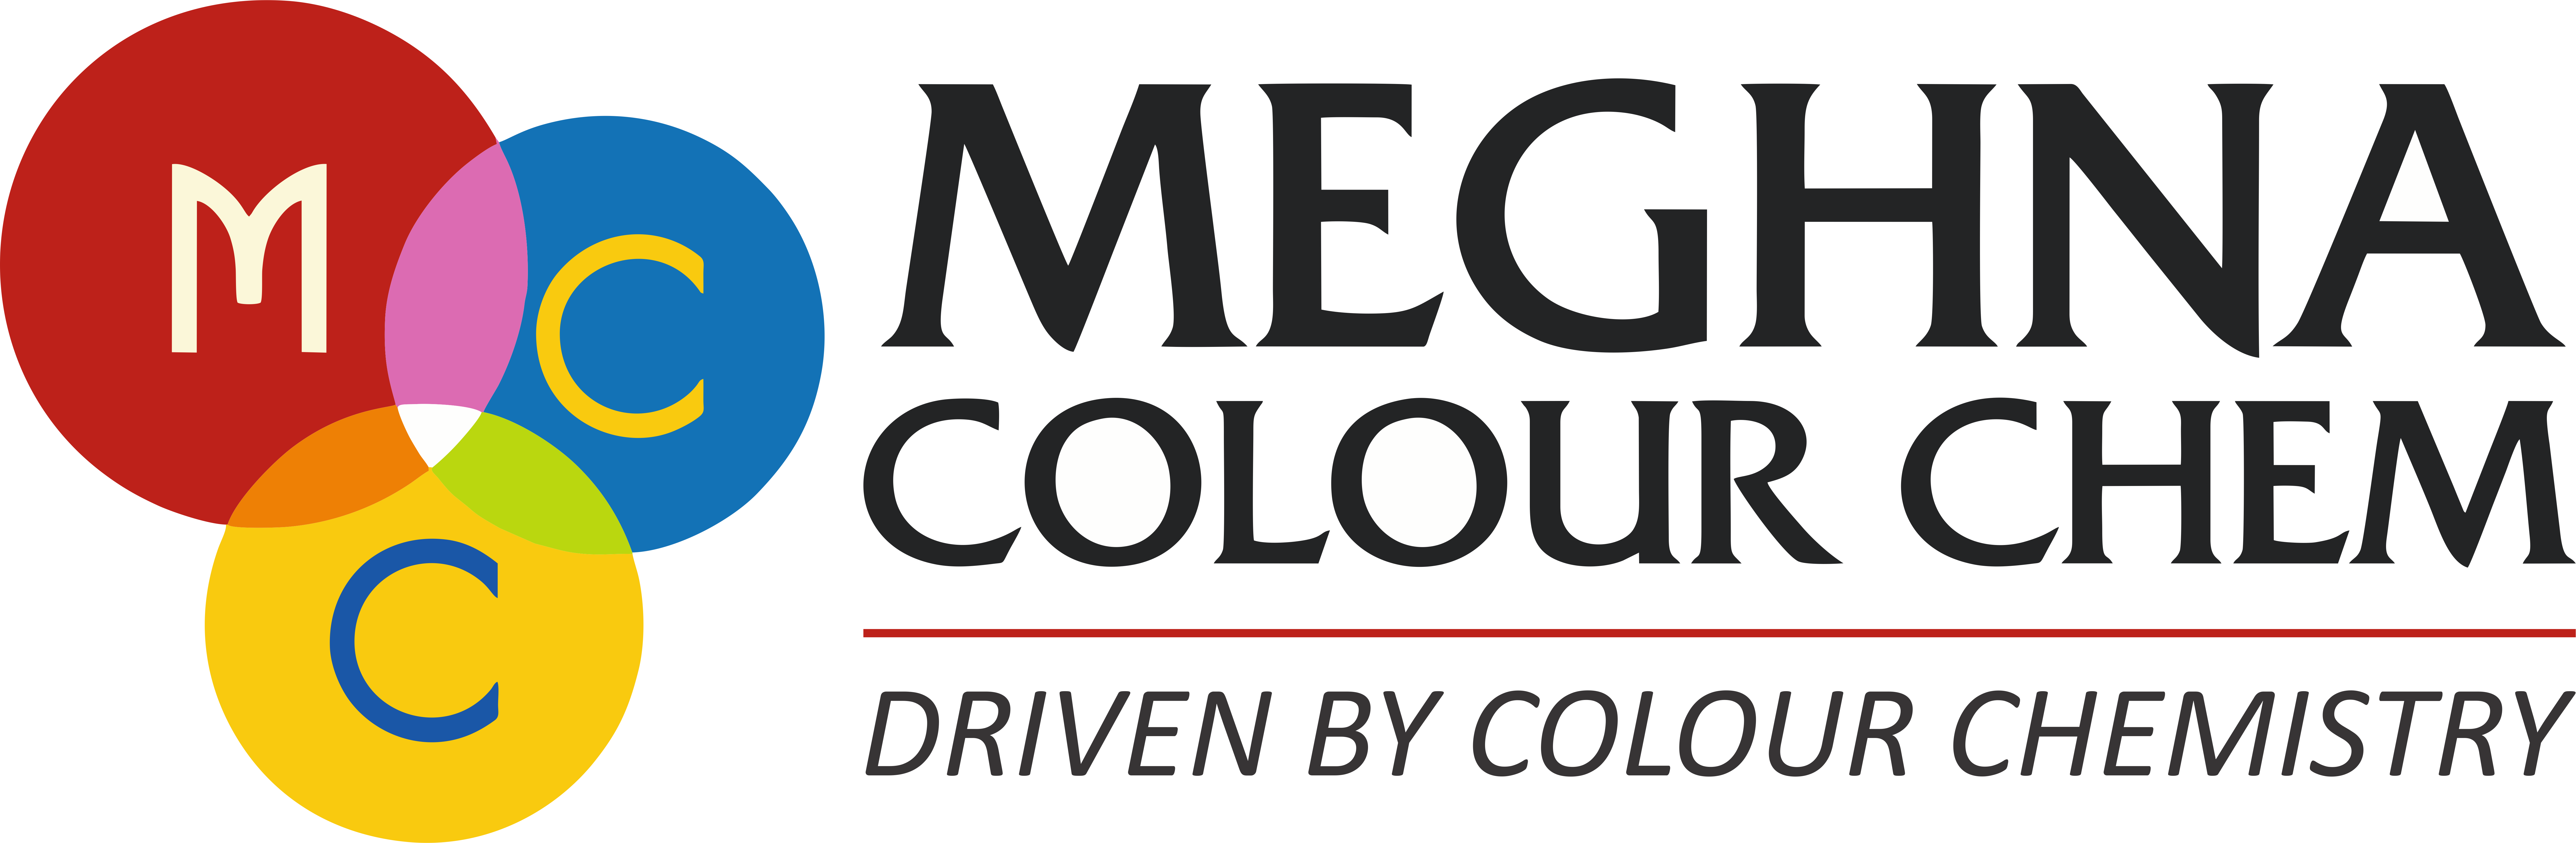 Meghna Colour Chem (MCC- Pigments)_logo